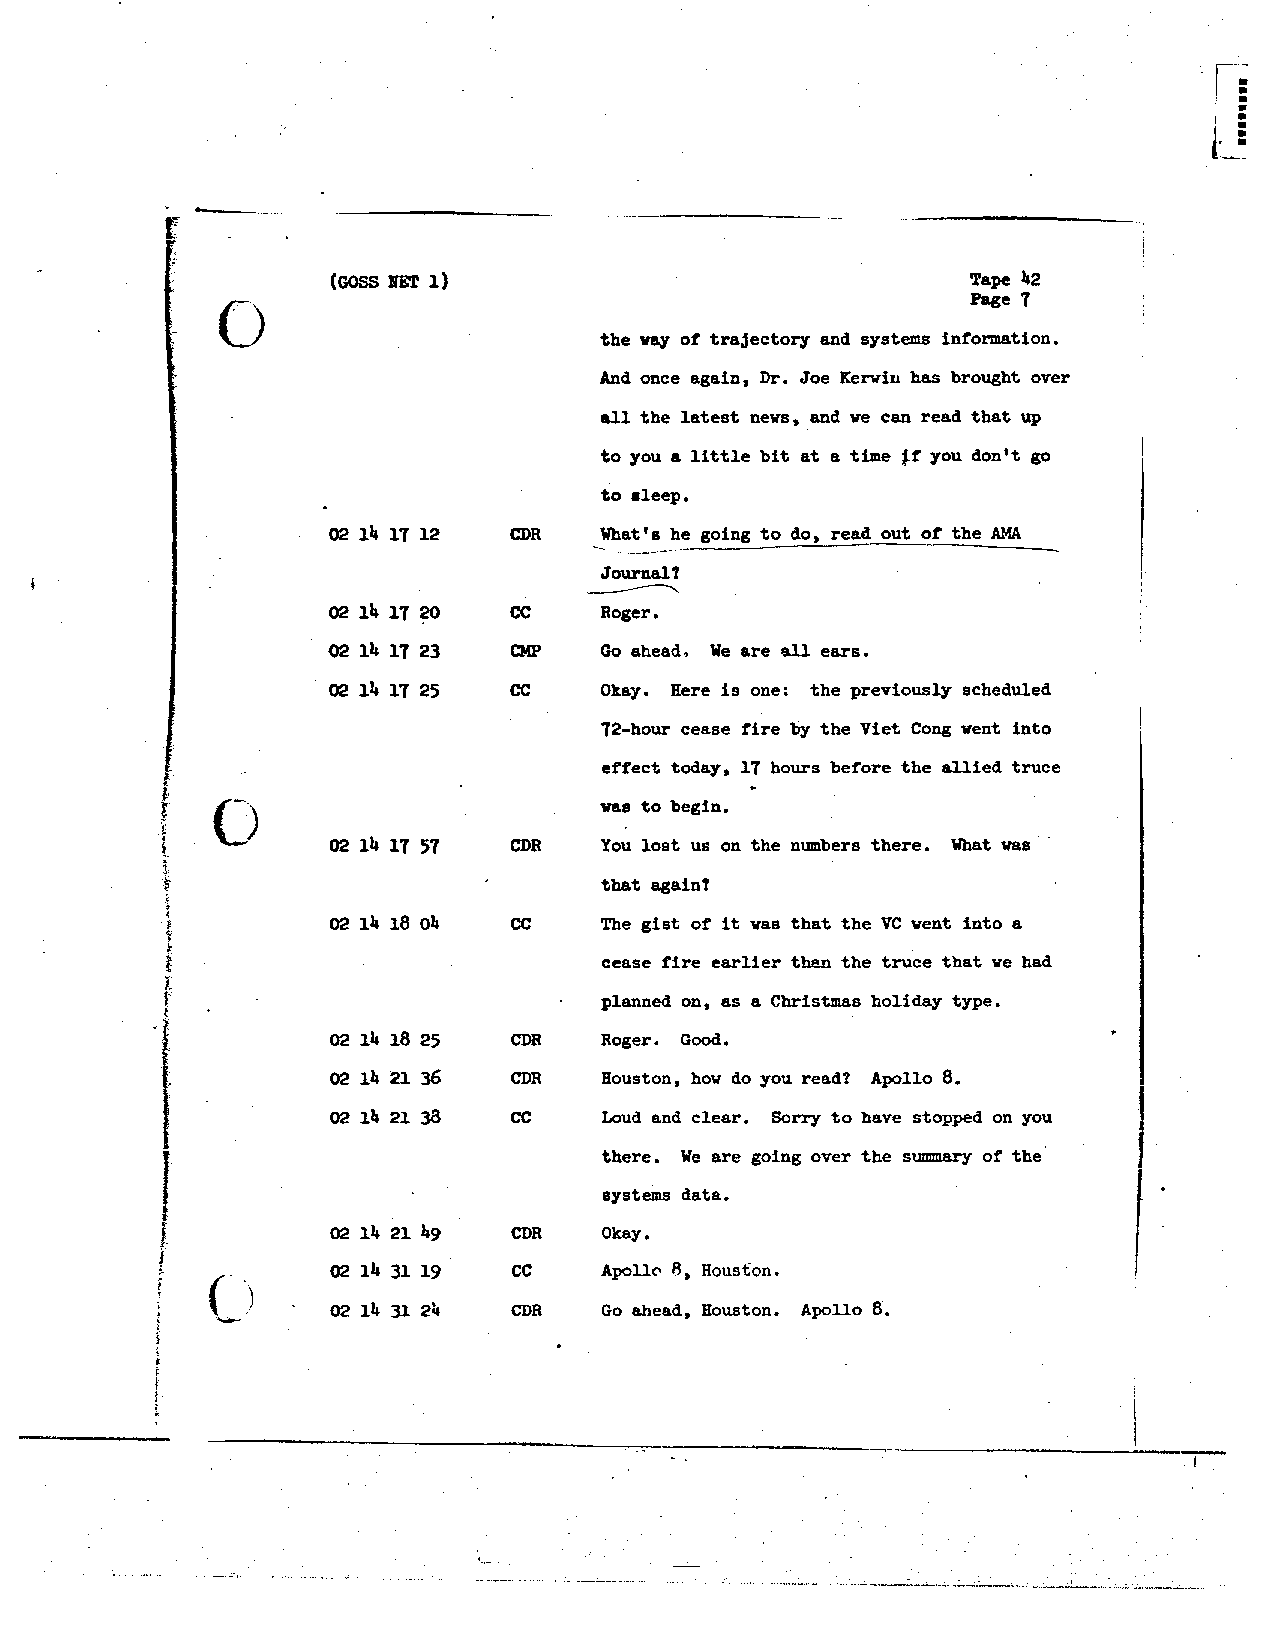 Page 329 of Apollo 8’s original transcript